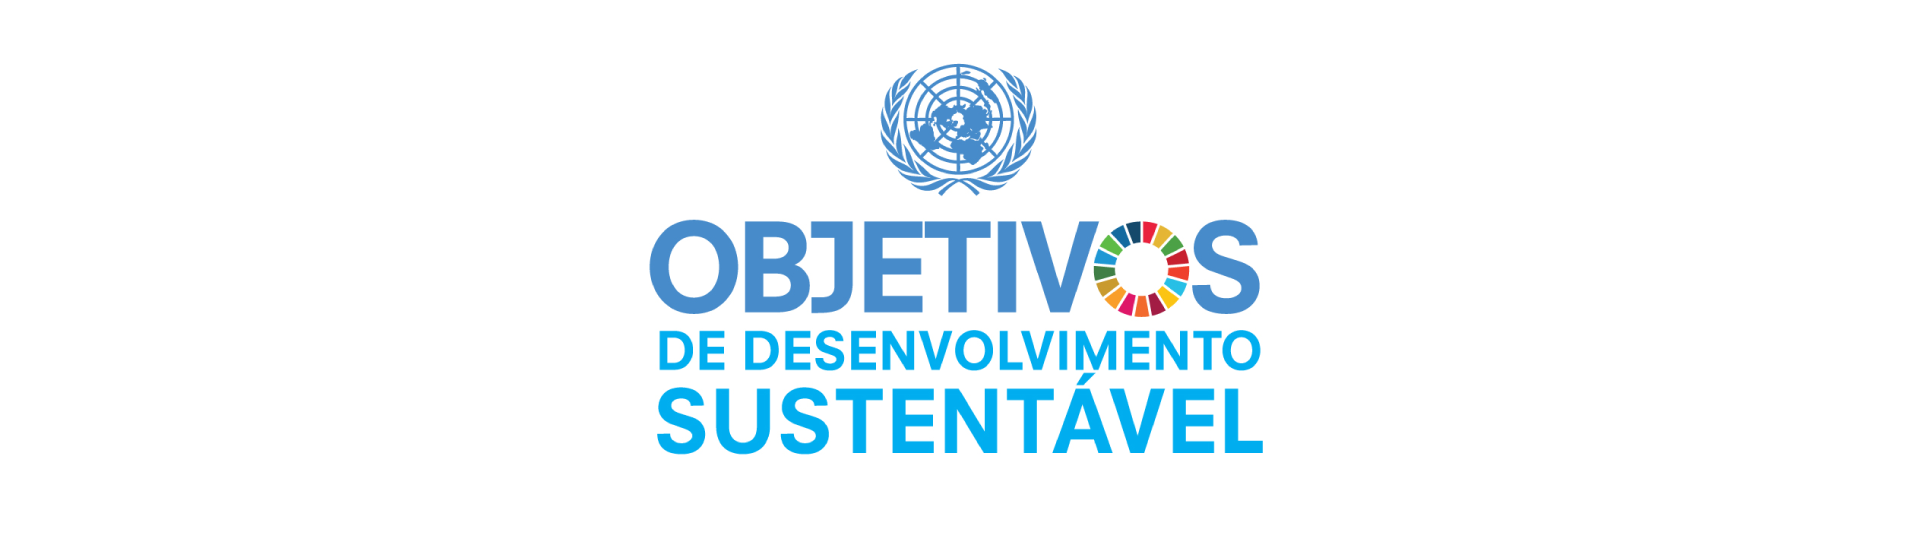 Sicoob ganha selo ODS 2020 e comprova apoio do cooperativismo ao desenvolvimento sustentável.